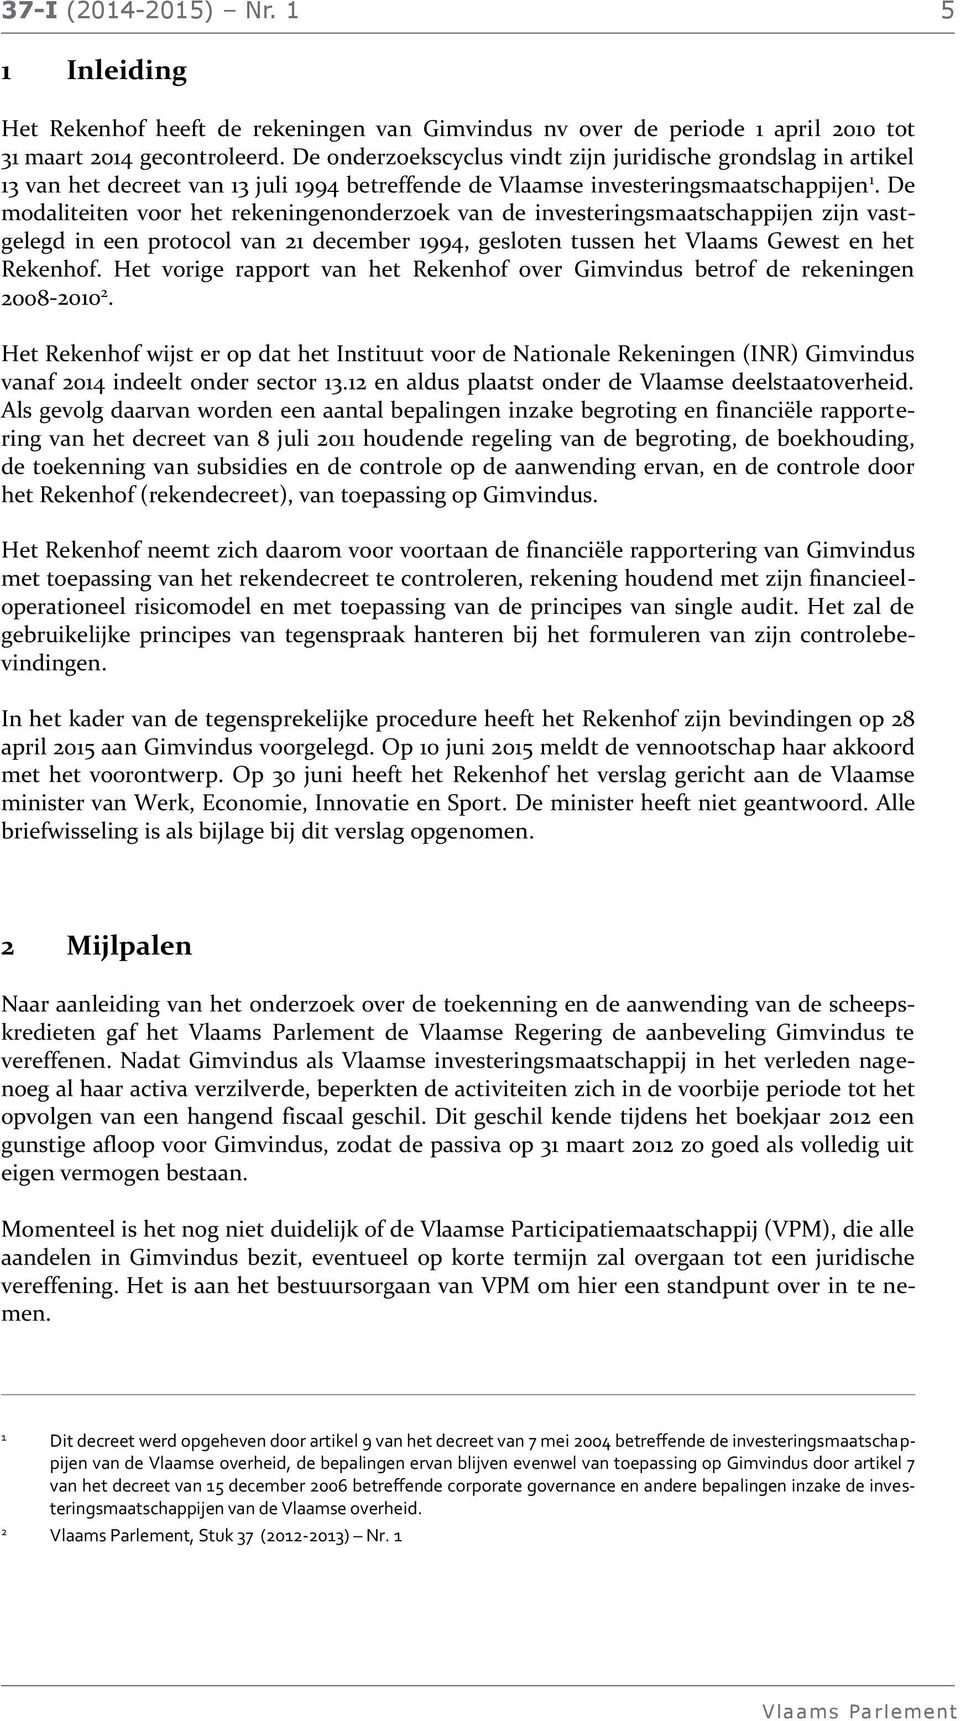 De modaliteiten voor het rekeningenonderzoek van de investeringsmaatschappijen zijn vastgelegd in een protocol van 21 december 1994, gesloten tussen het Vlaams Gewest en het Rekenhof.